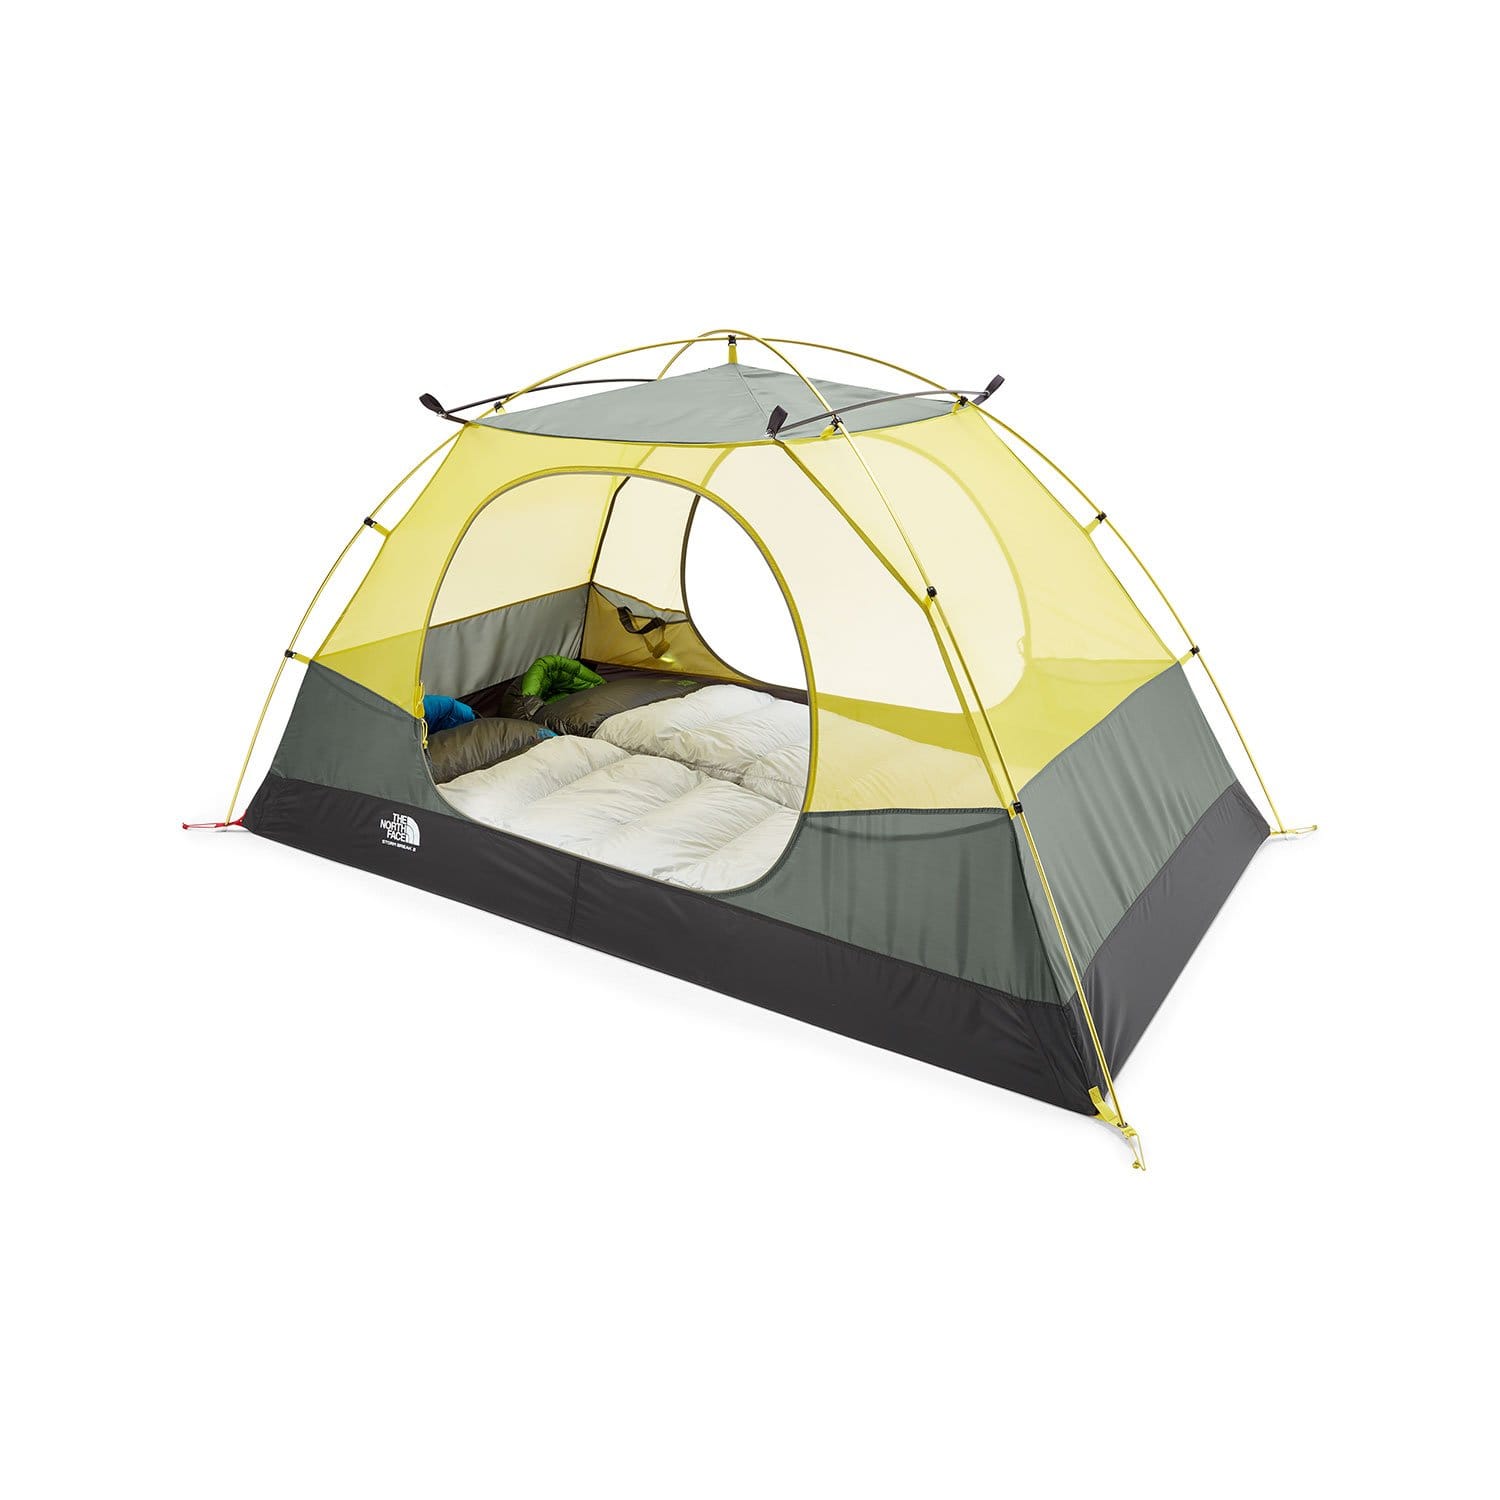 The North Face Stormbreak 2 Tent – Campmor